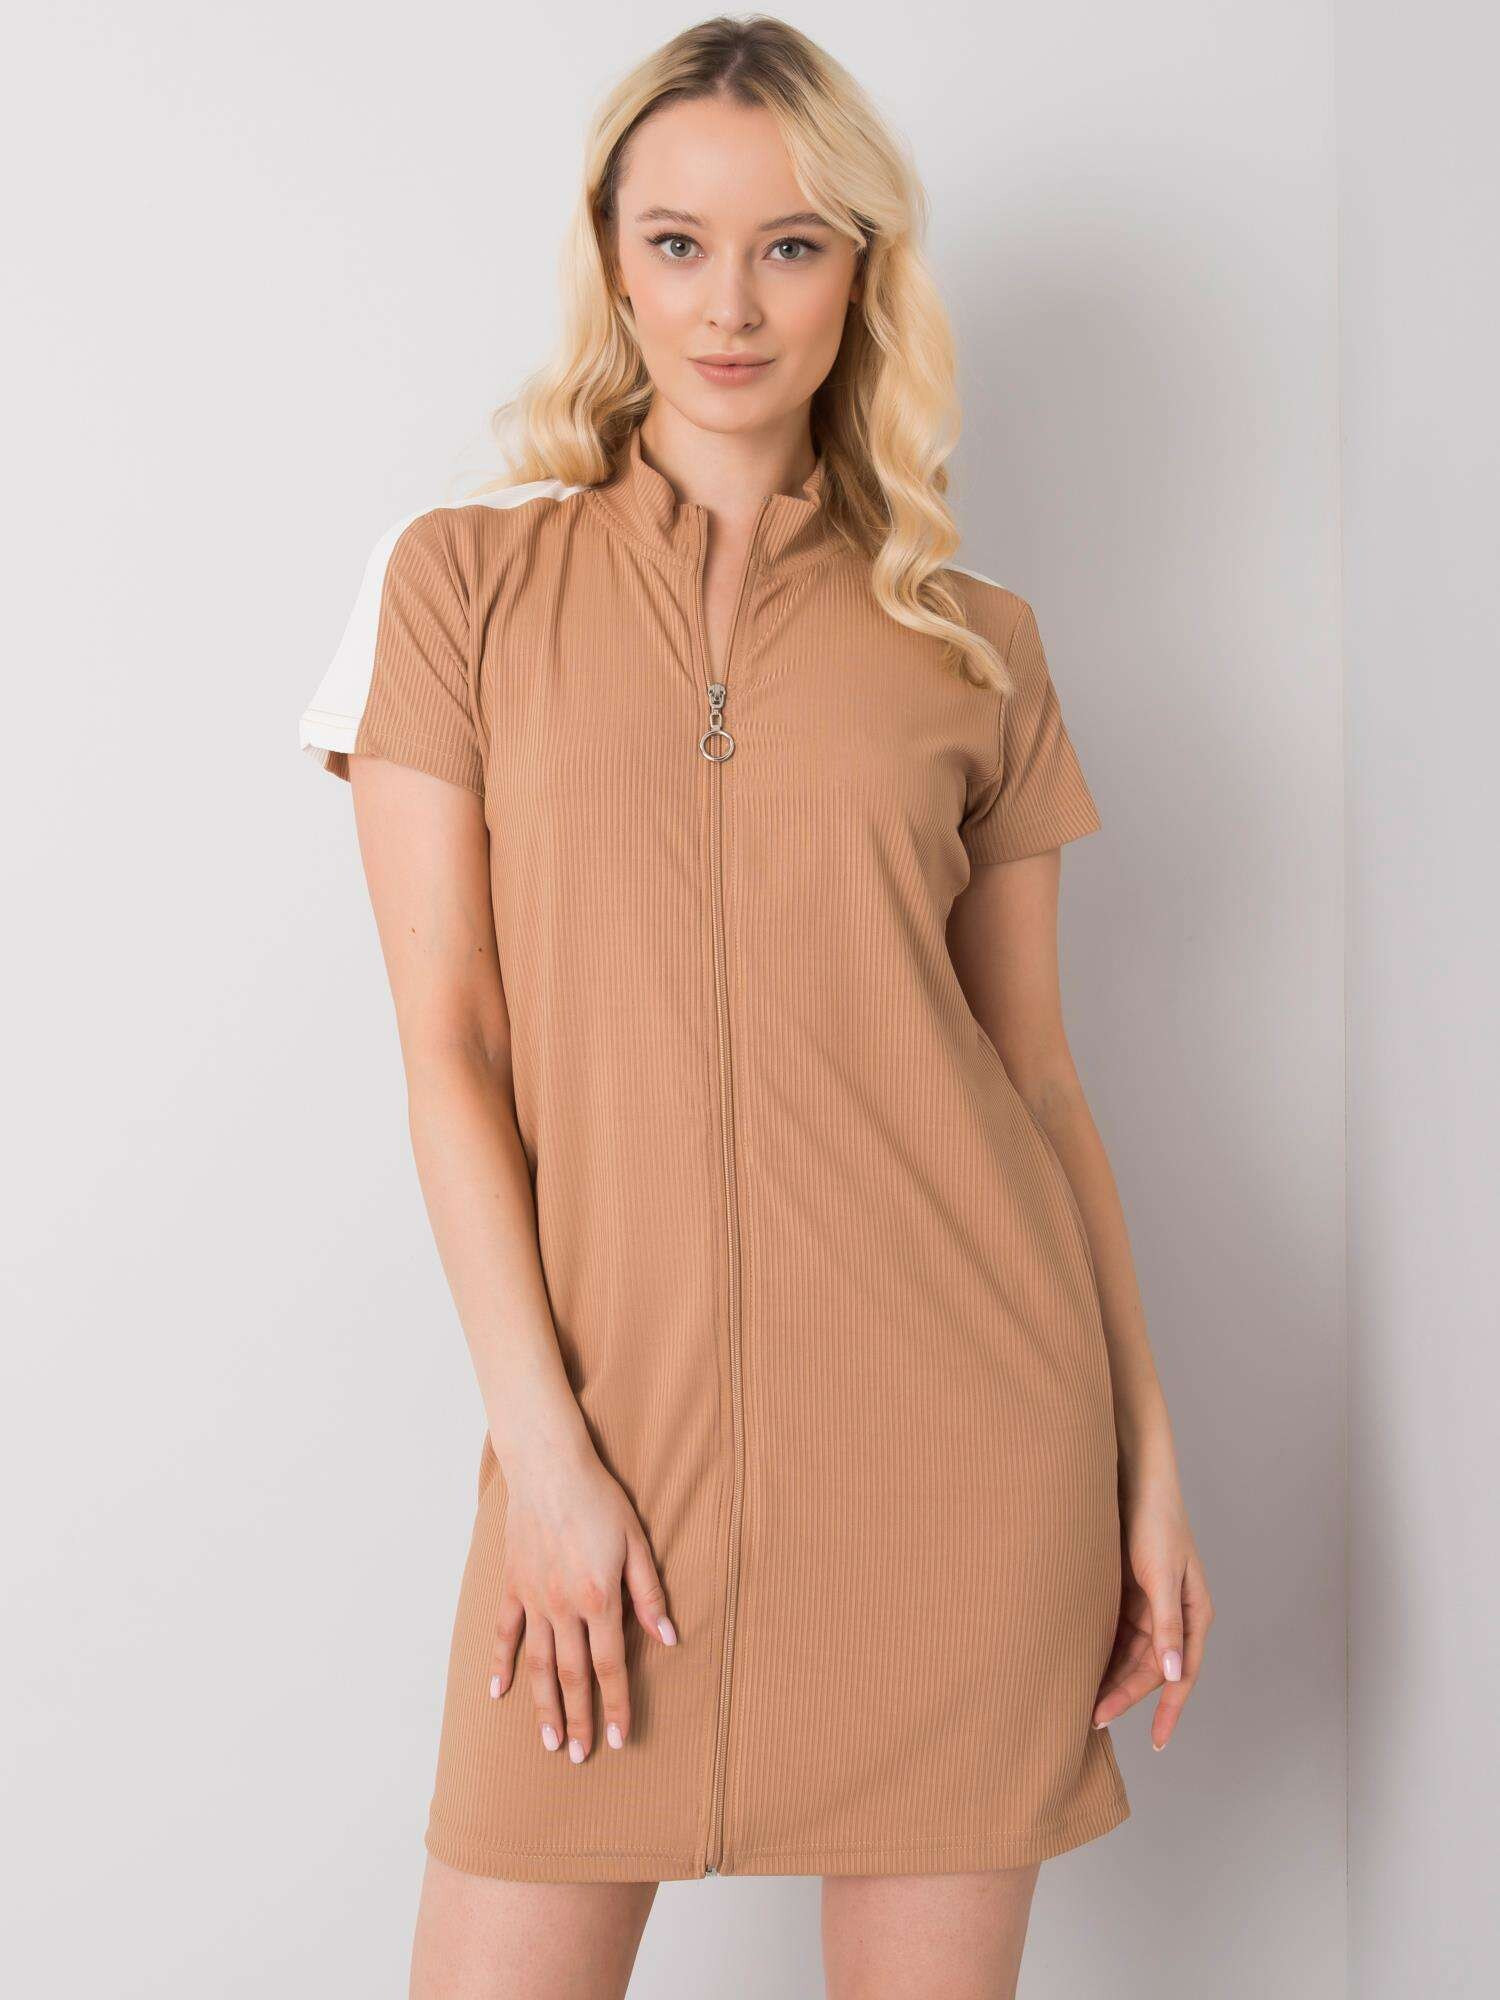 Женское платье с коротким рукавом Factory Price серый